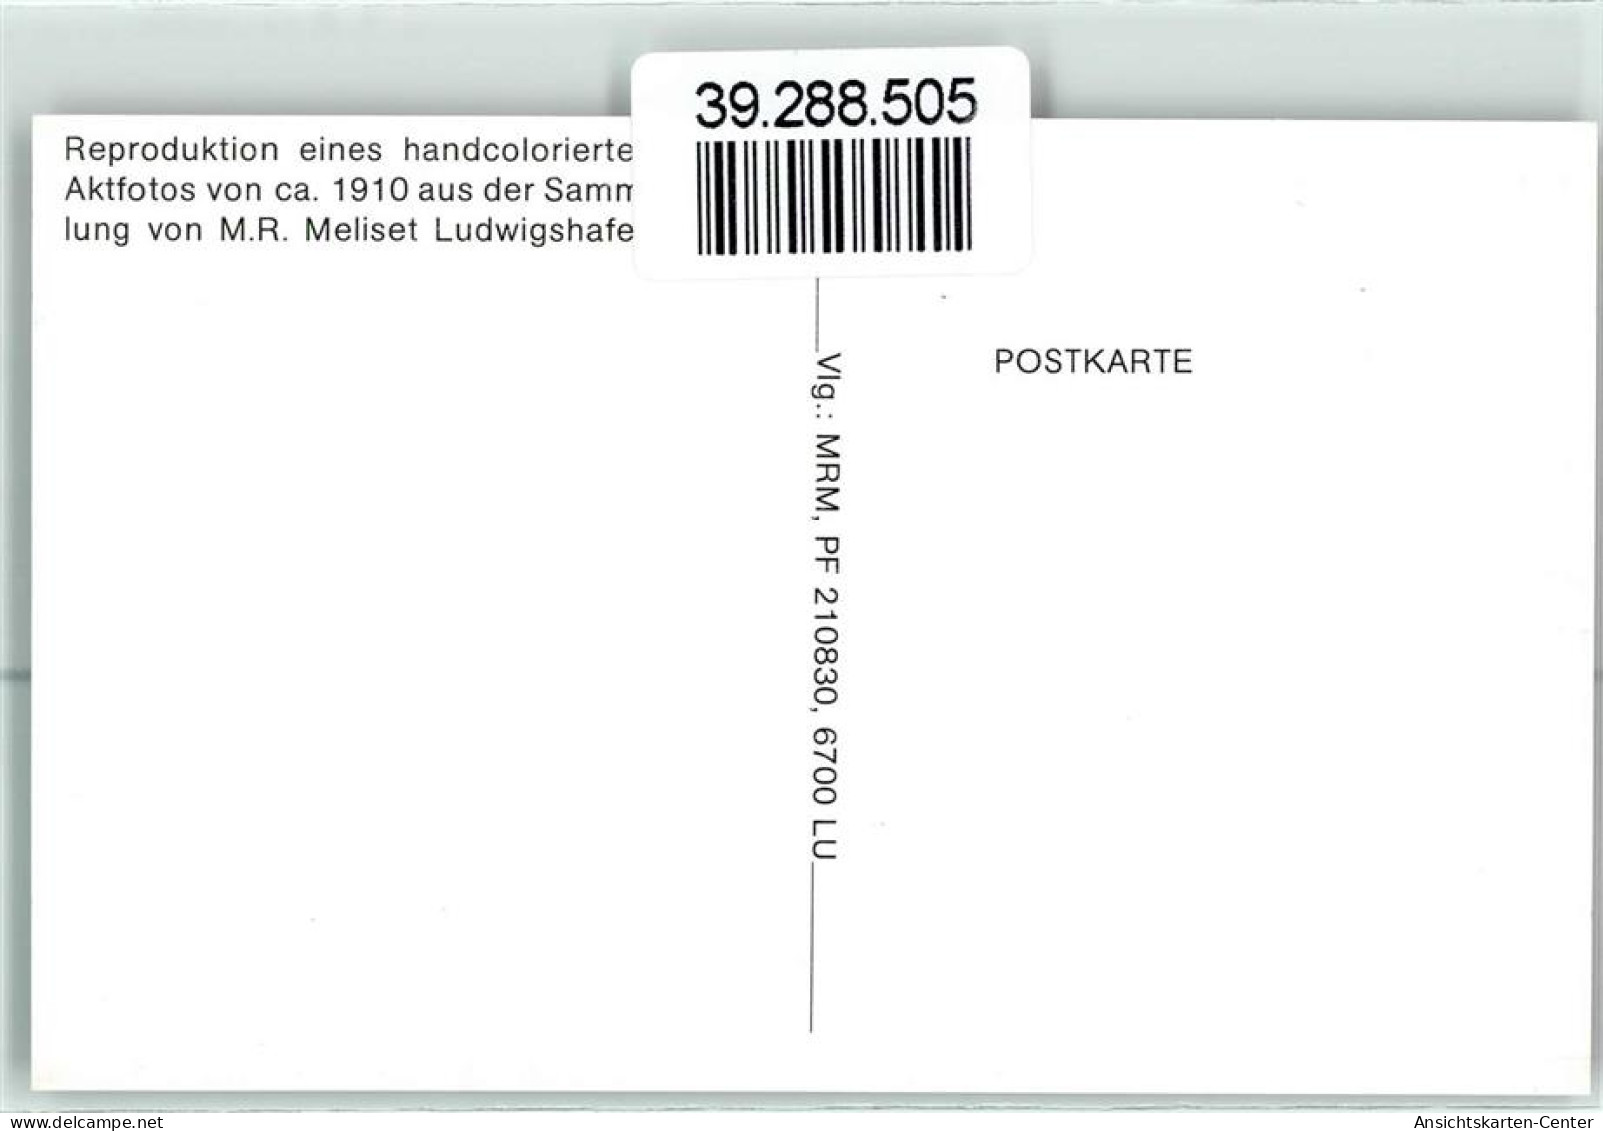 39288505 - Bauchtaenzerin  Handcoloriert Verlag A. Noyer Nr. 206 - Reproduktion - Lapinot